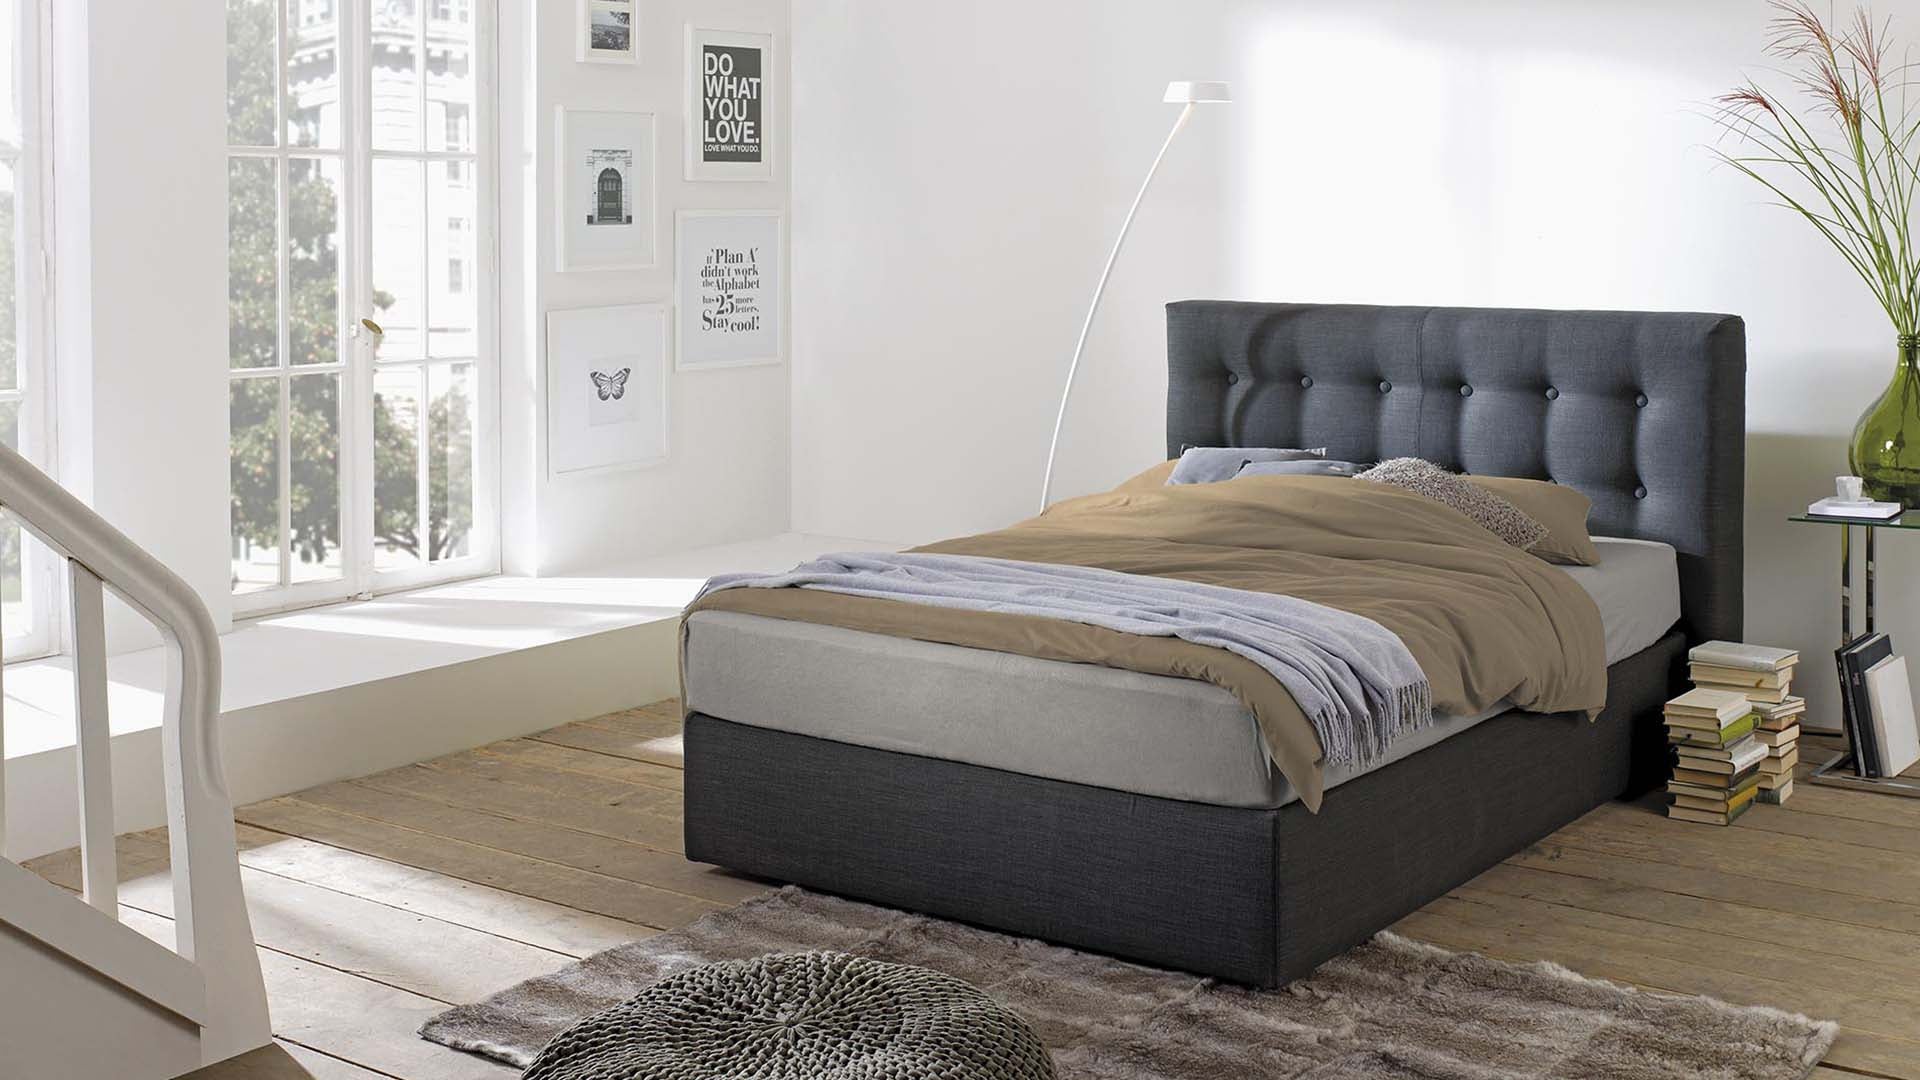 Helles Schlafzimmer mit Hüsler Nest Bett in anthrazitfarbenem Stoff und Knopfoptik-Kopfteil als natürliches Boxpsringbett.